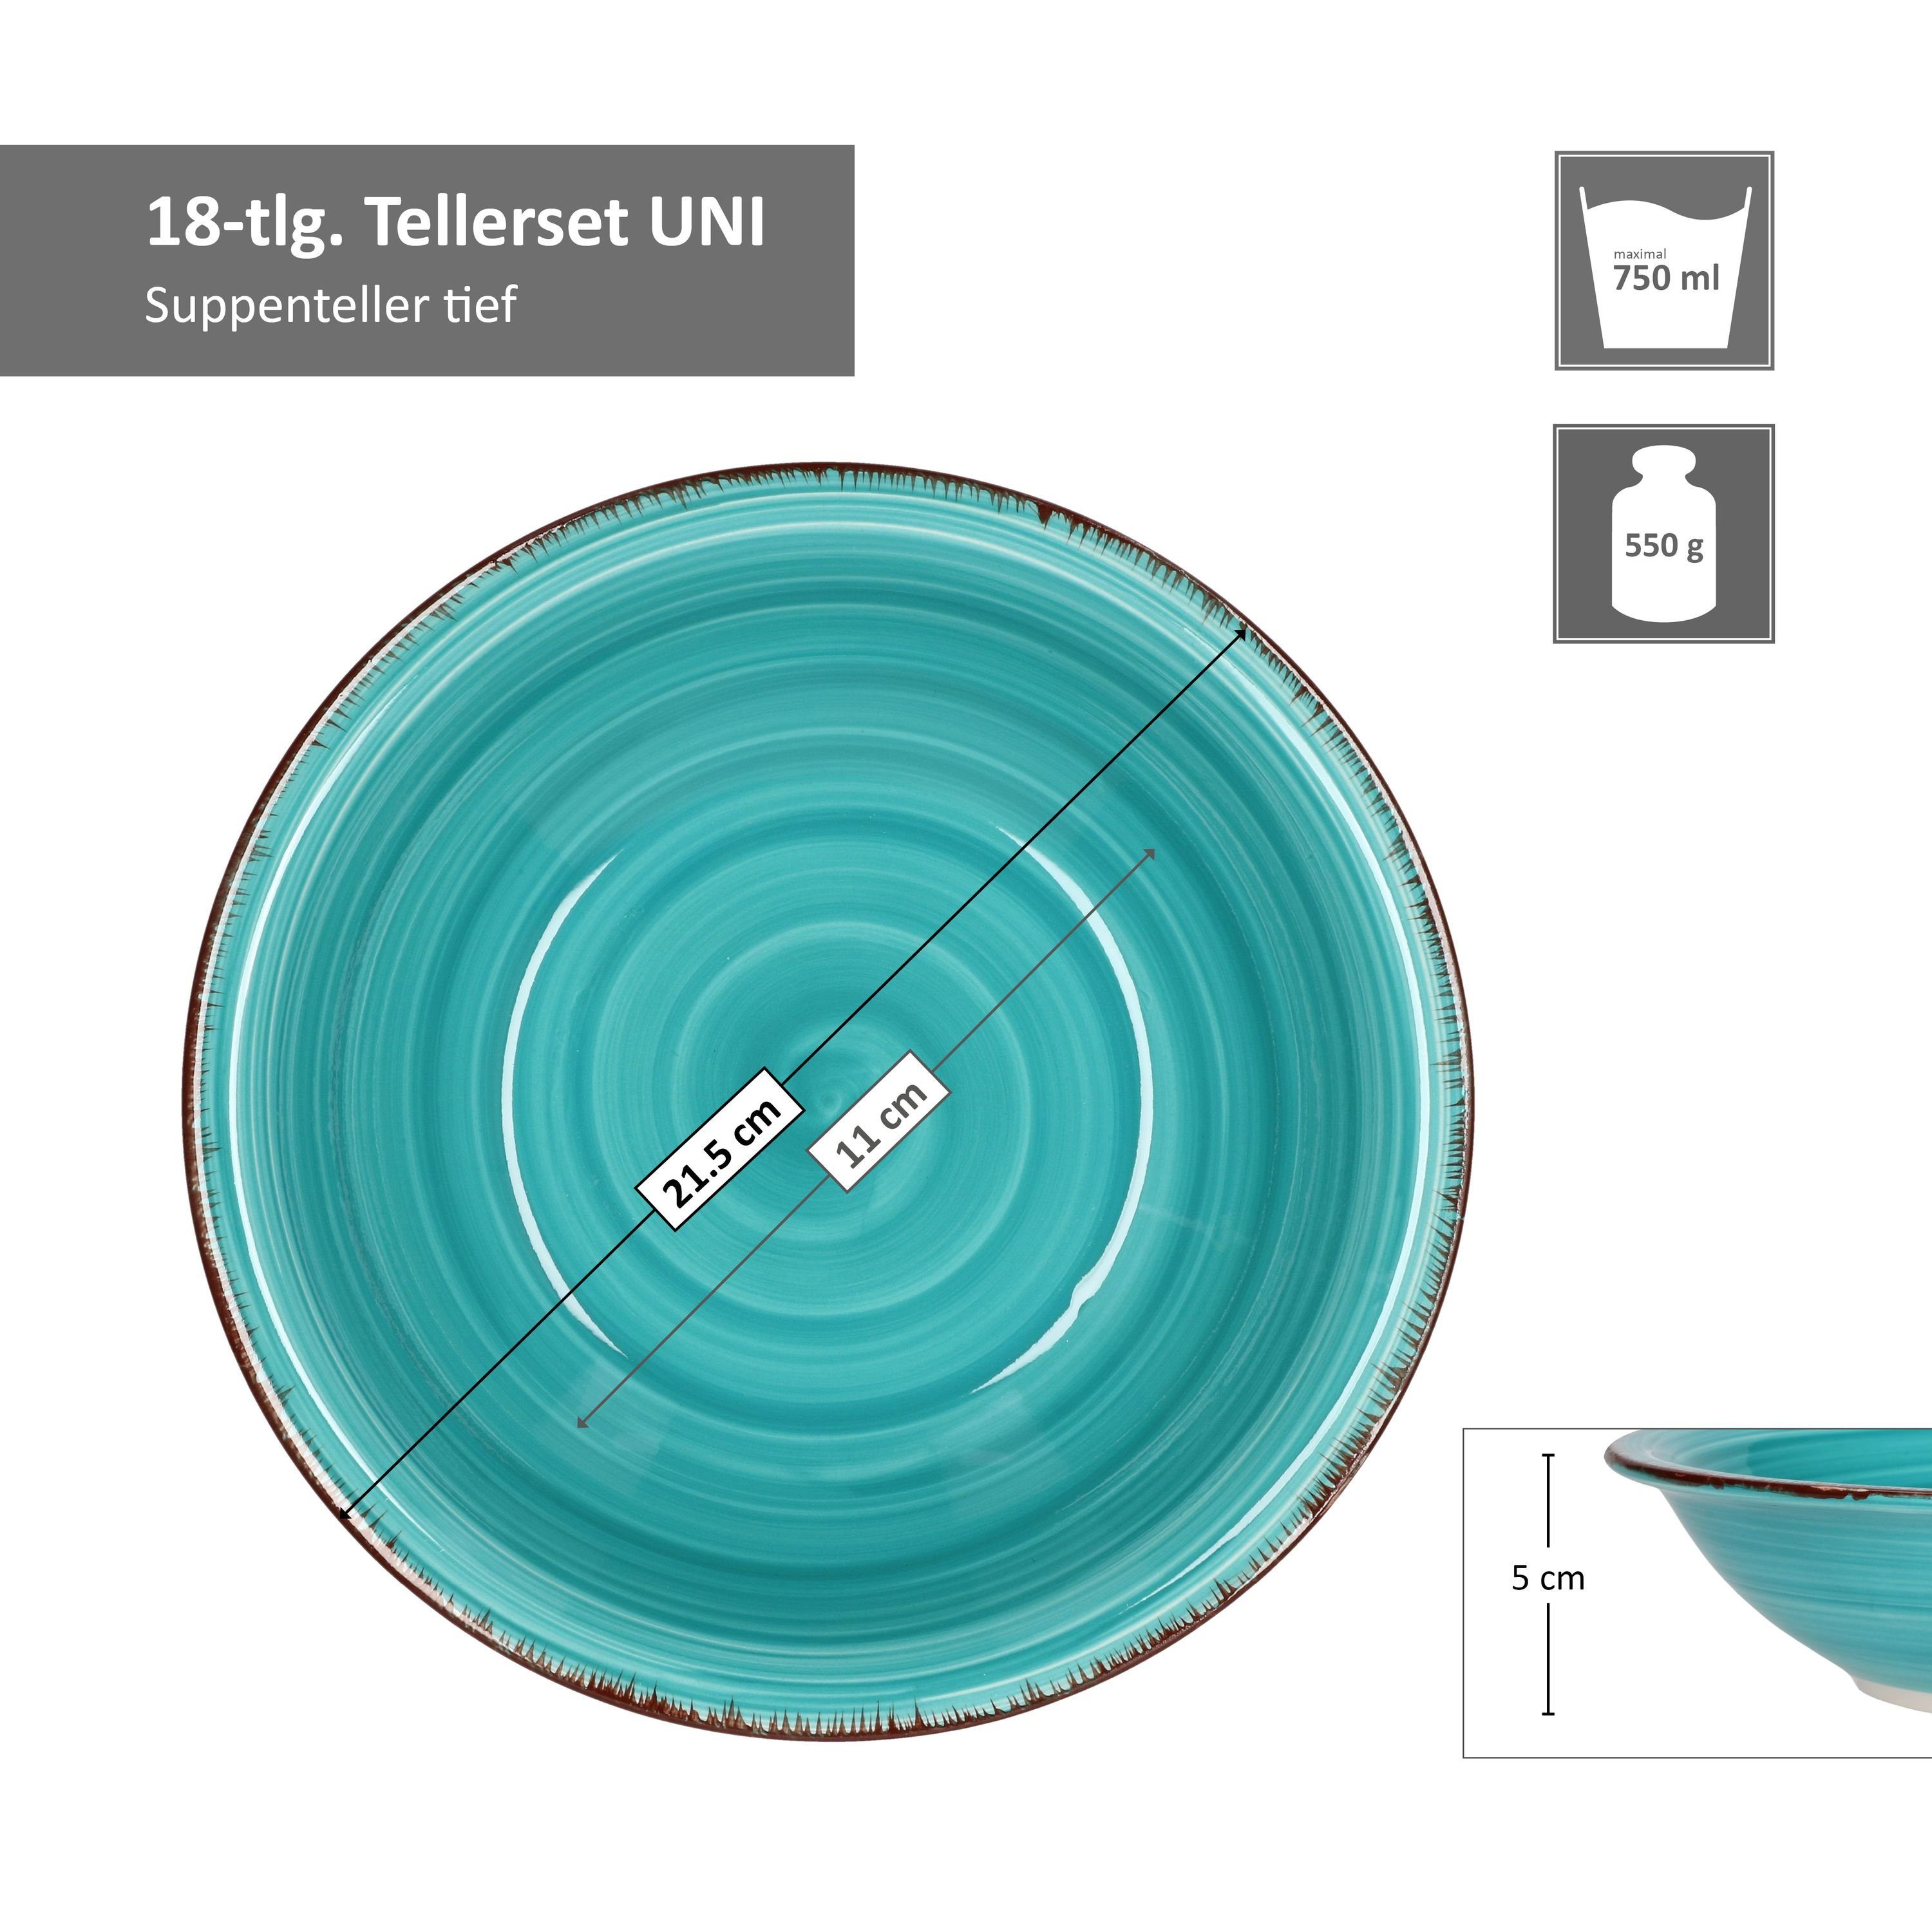 MamboCat Teller-Set 18tlg. Tellerset Farben für 6 unterschiedlichen in Uni Personen Bunt